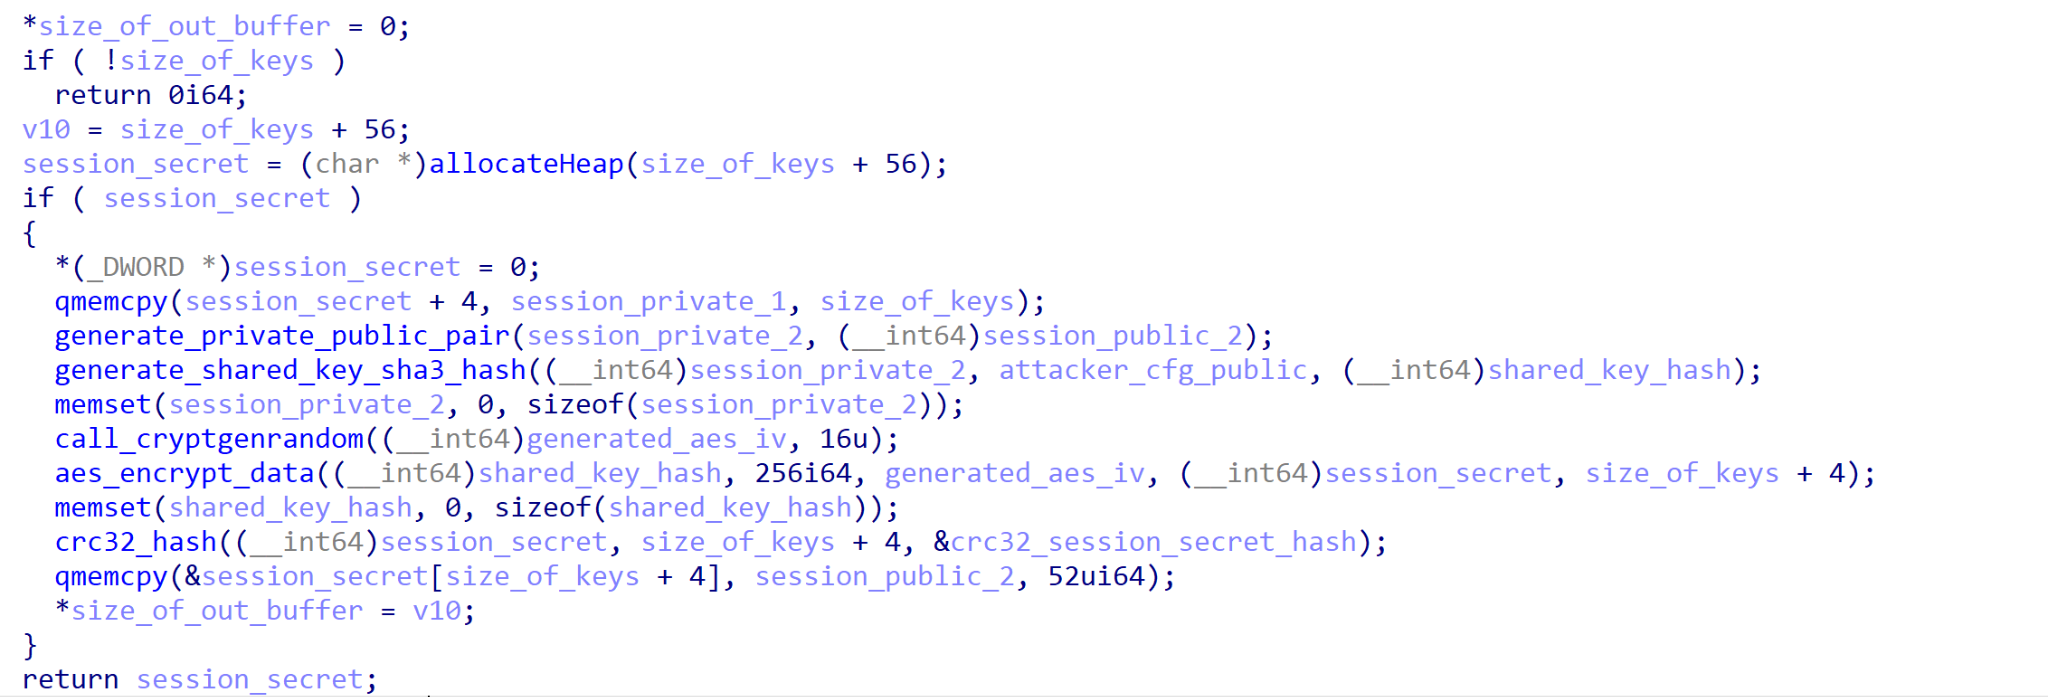 セッションシークレットの生成手順(逆コンパイルされた状態)。この図は、暗号化されたBLOBがCRC-32でハッシュ化され、session_public_2、AES IV、計算されたCRC-32ハッシュの値が付加されるようすを示している。表示されているコードスニペットの最後でsession_secretが返されている。 